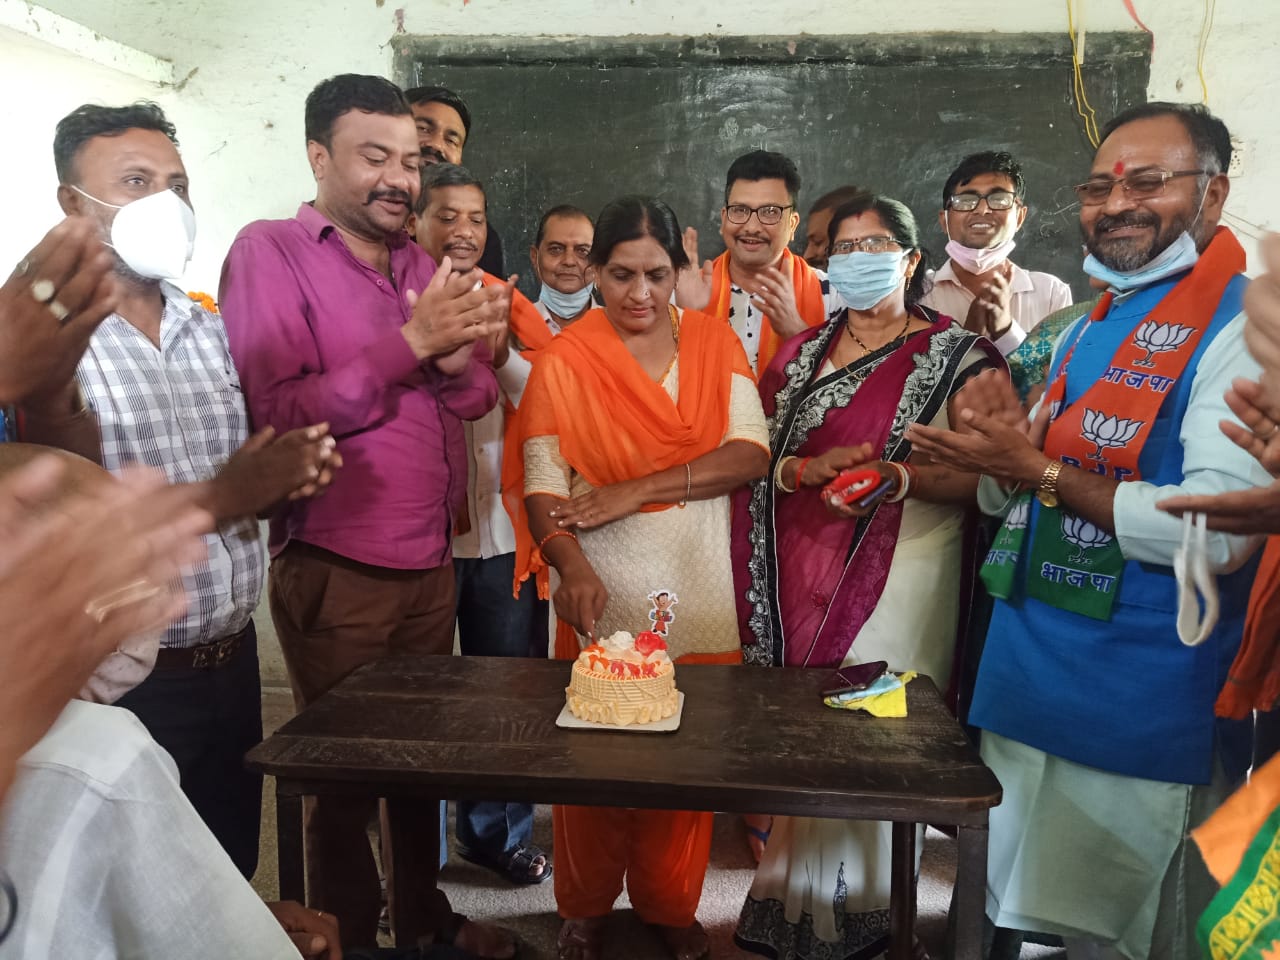 कैम्प मंडल में मना जनसंघ के संस्थापक श्यामा प्रसाद मुखर्जी का अवतरण दिवस